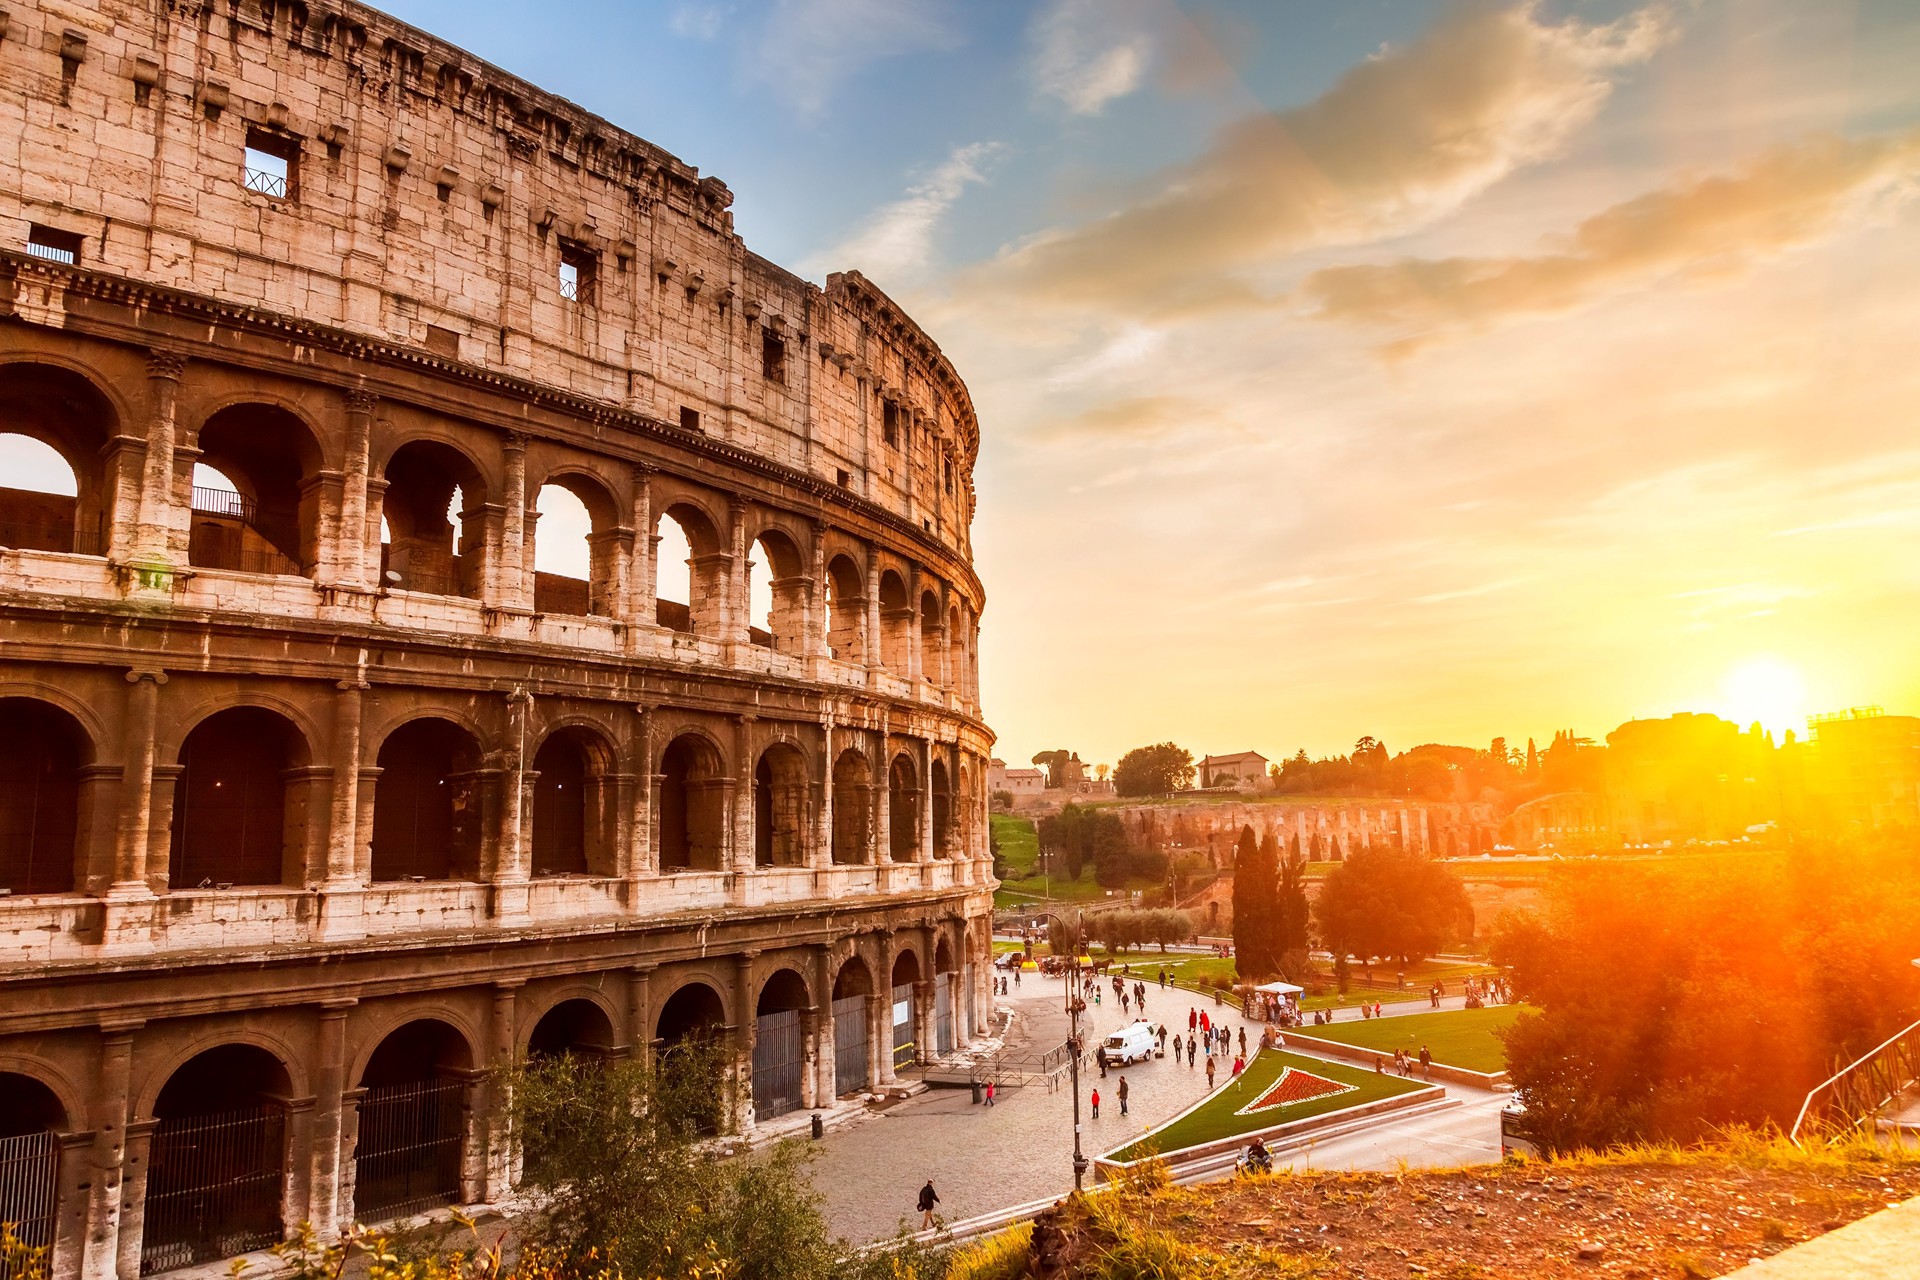 Il Parco Archeologico del Colosseo riapre l'1 giugno con una nuova bigliettazione e nuovi orari